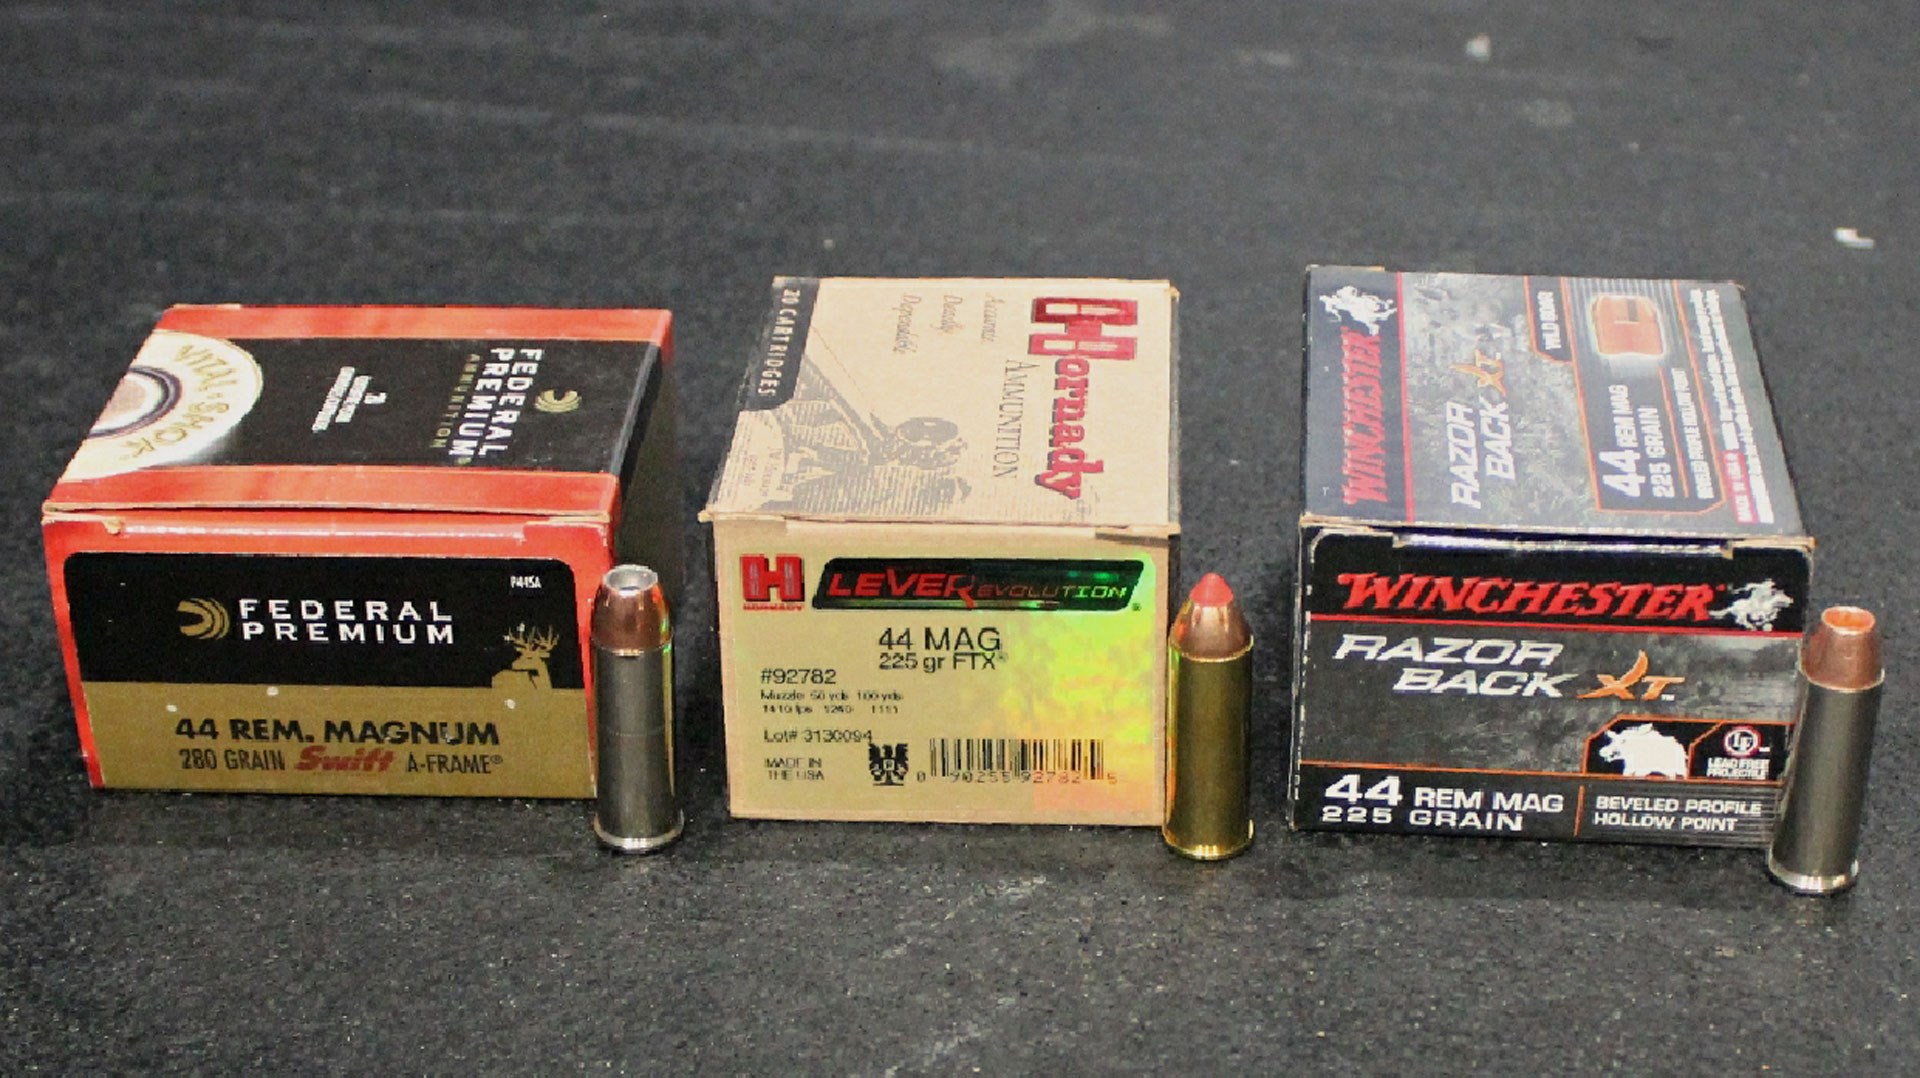 .44 Magnum ammo boxes